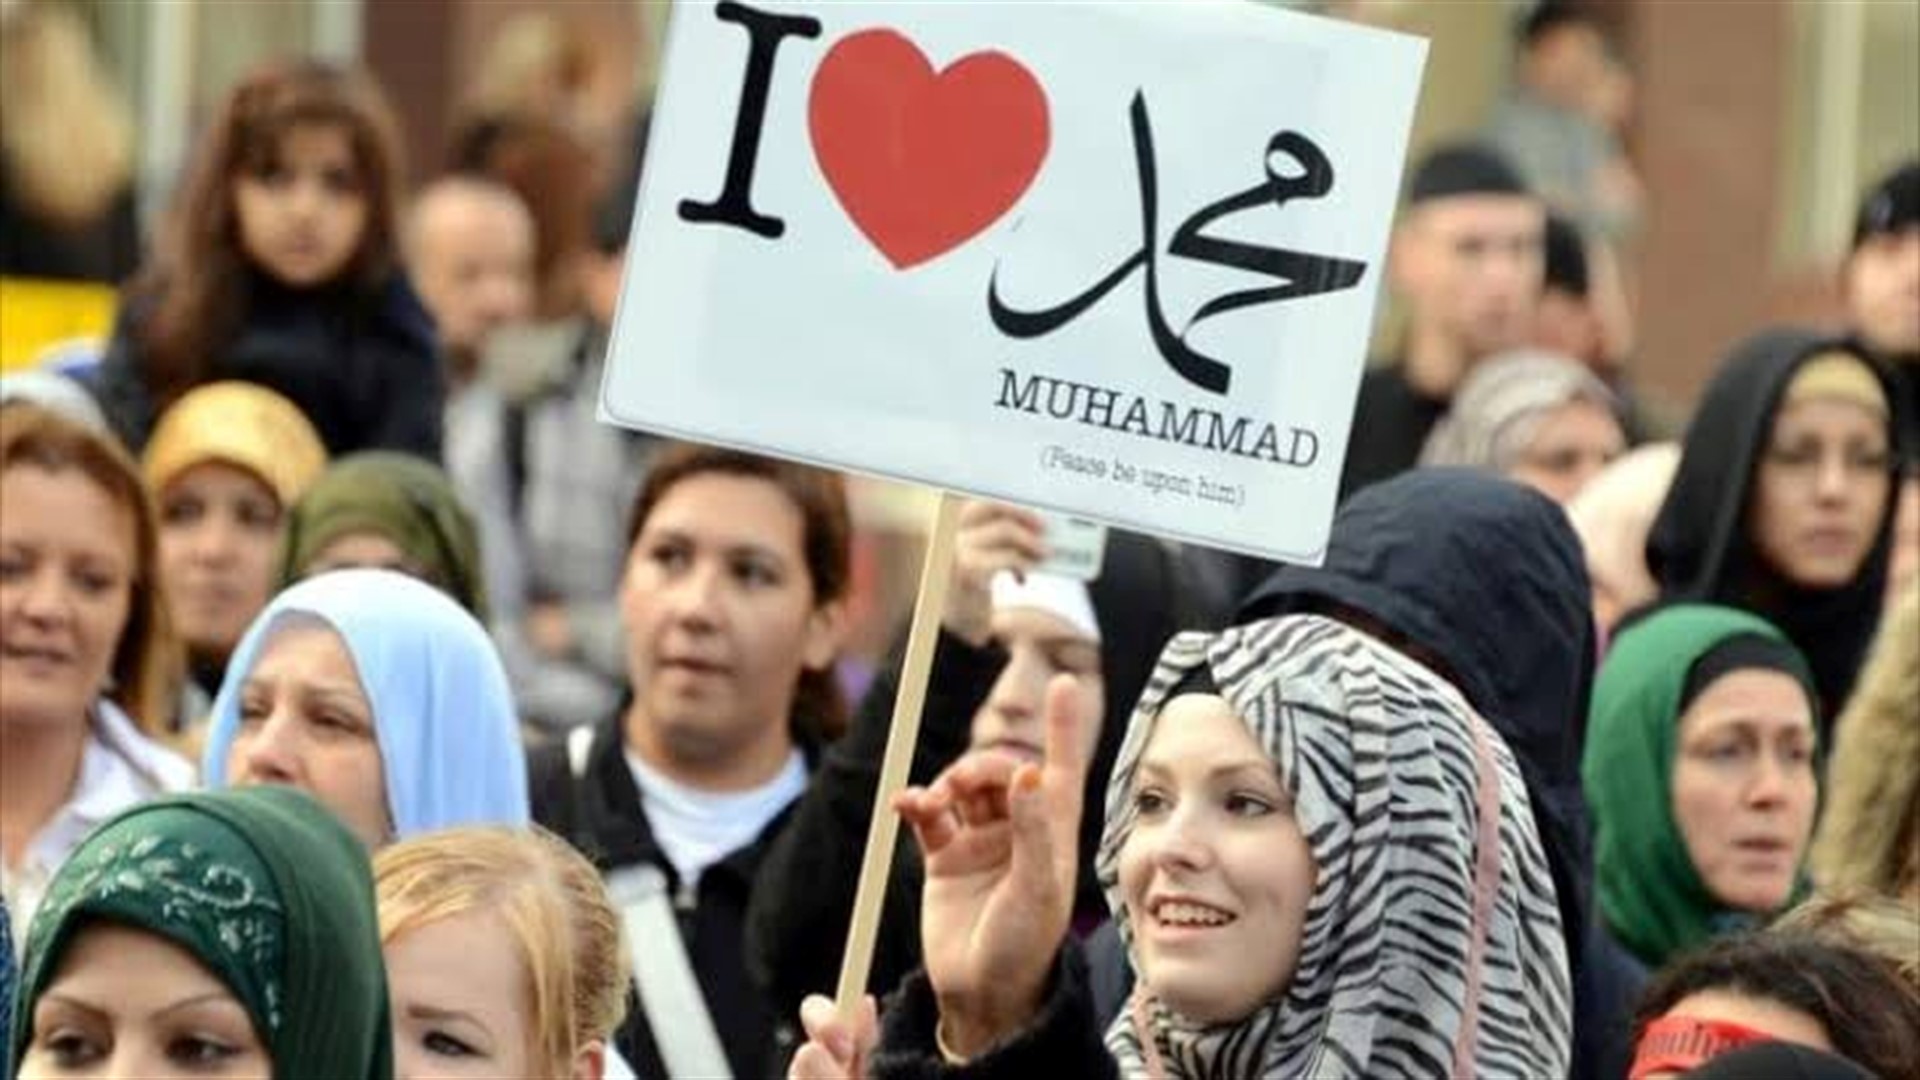 حملة واسعة في الدول العربية لمقاطعة المنتجات الفرنسية ردا على الإساءات المتواصلة للرسول الاكرم (ص) وللدين الاسلامي